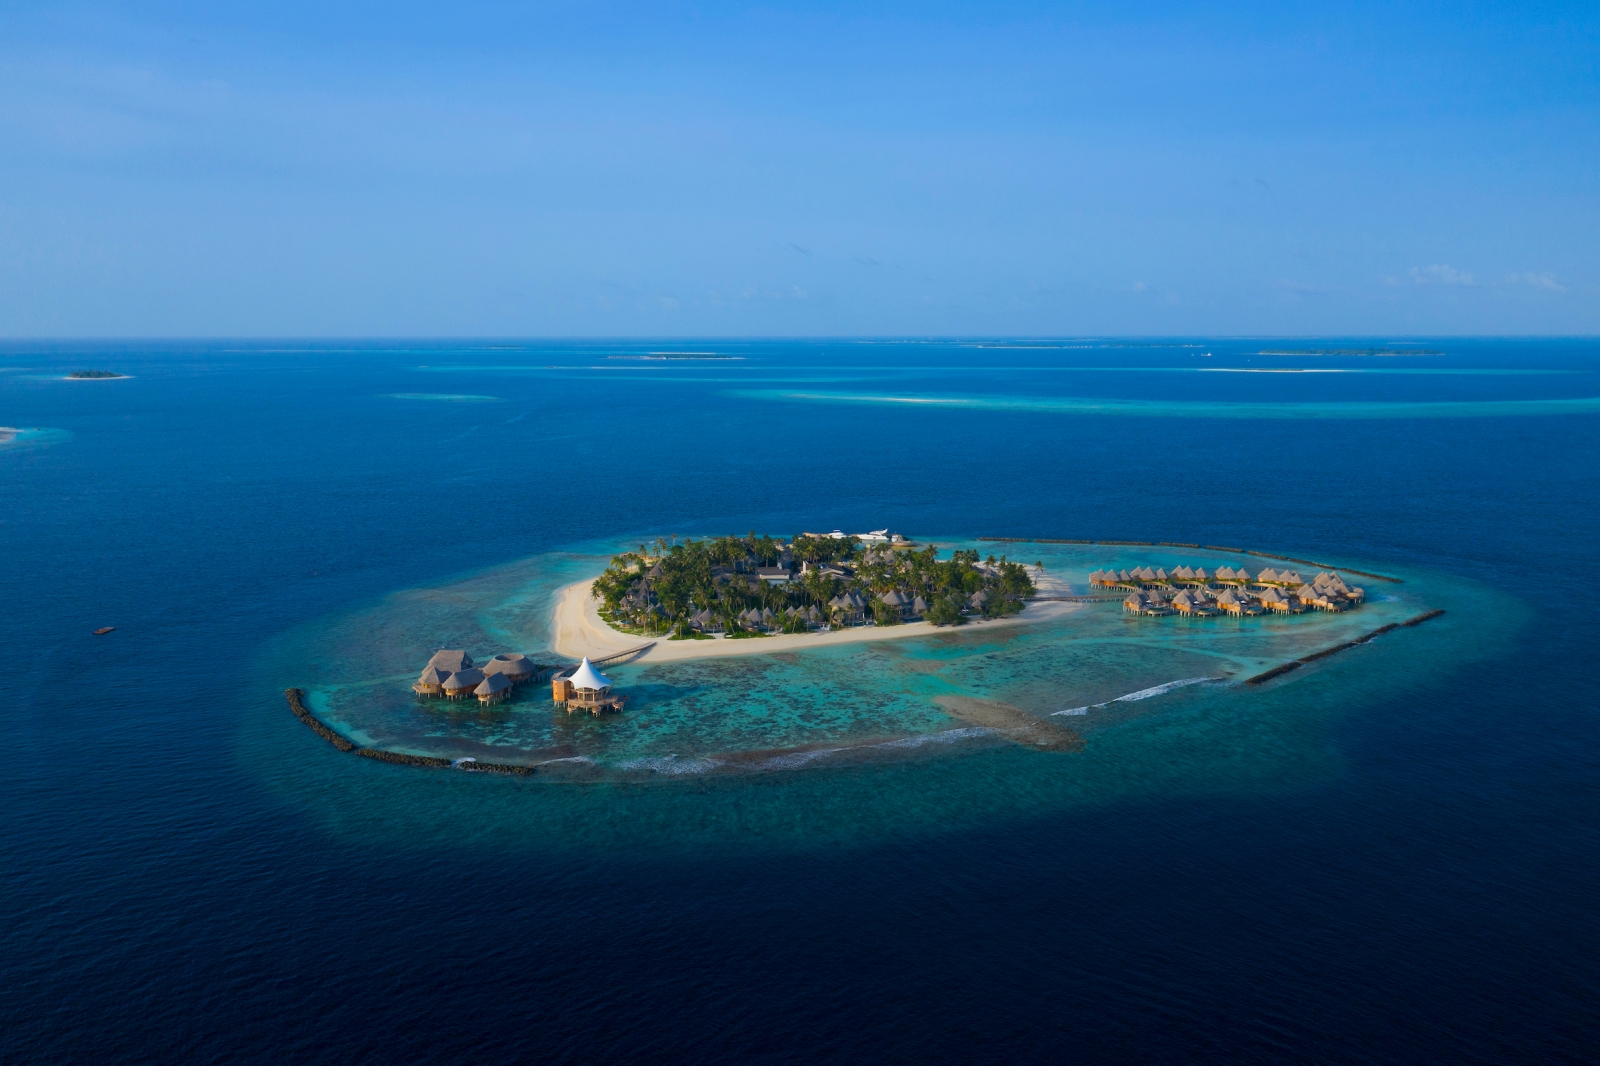 The Nautilus, Maldives - Aerial